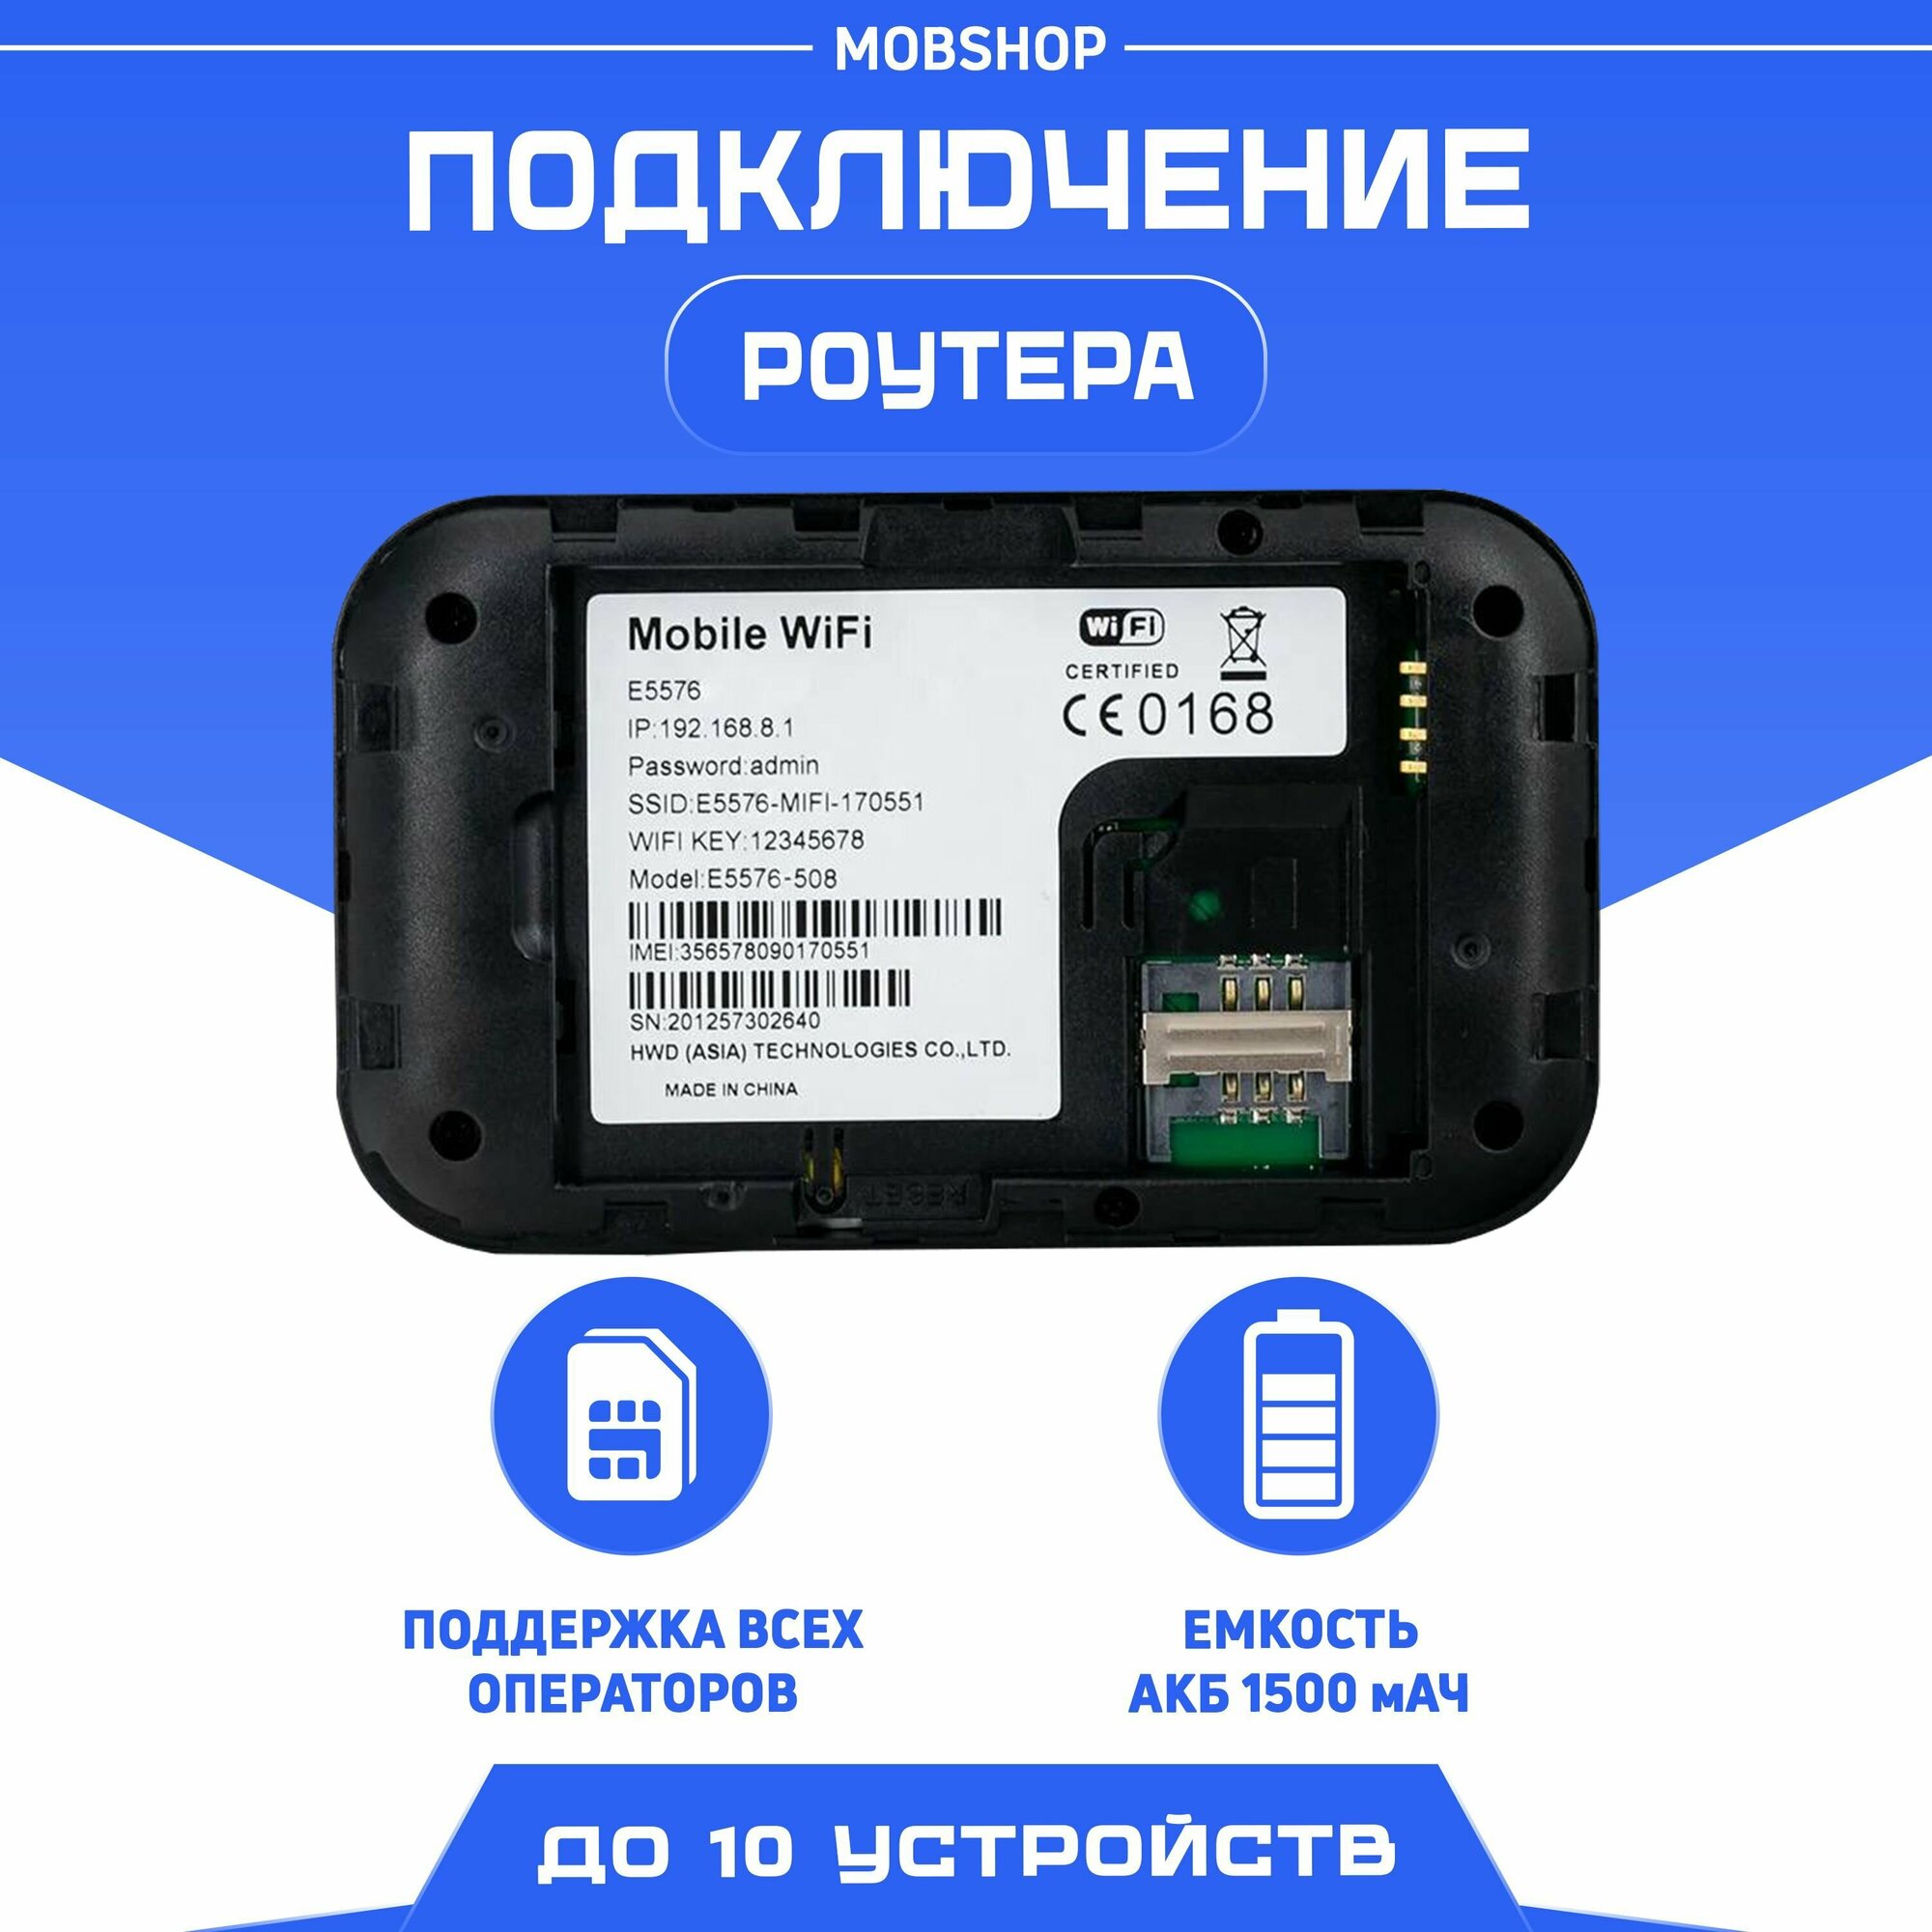 Беспроводной Роутер WI-FI 4G LTE/ Модем карманный/ Точка доступа